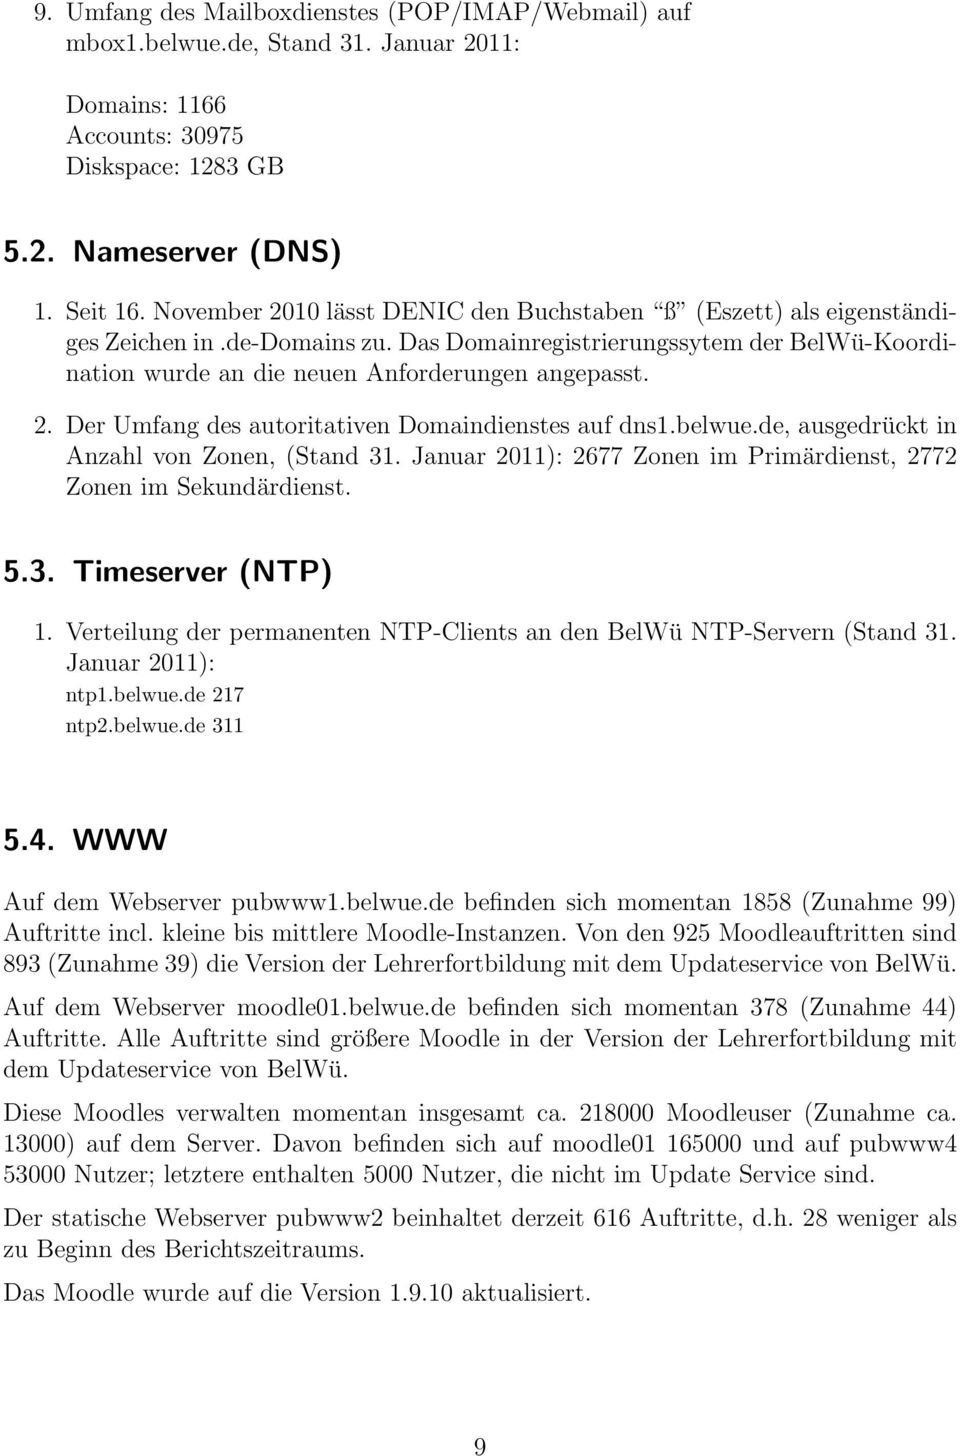 belwue.de, ausgedrückt in Anzahl von Zonen, (Stand 31. Januar 2011): 2677 Zonen im Primärdienst, 2772 Zonen im Sekundärdienst. 5.3. Timeserver (NTP) 1.